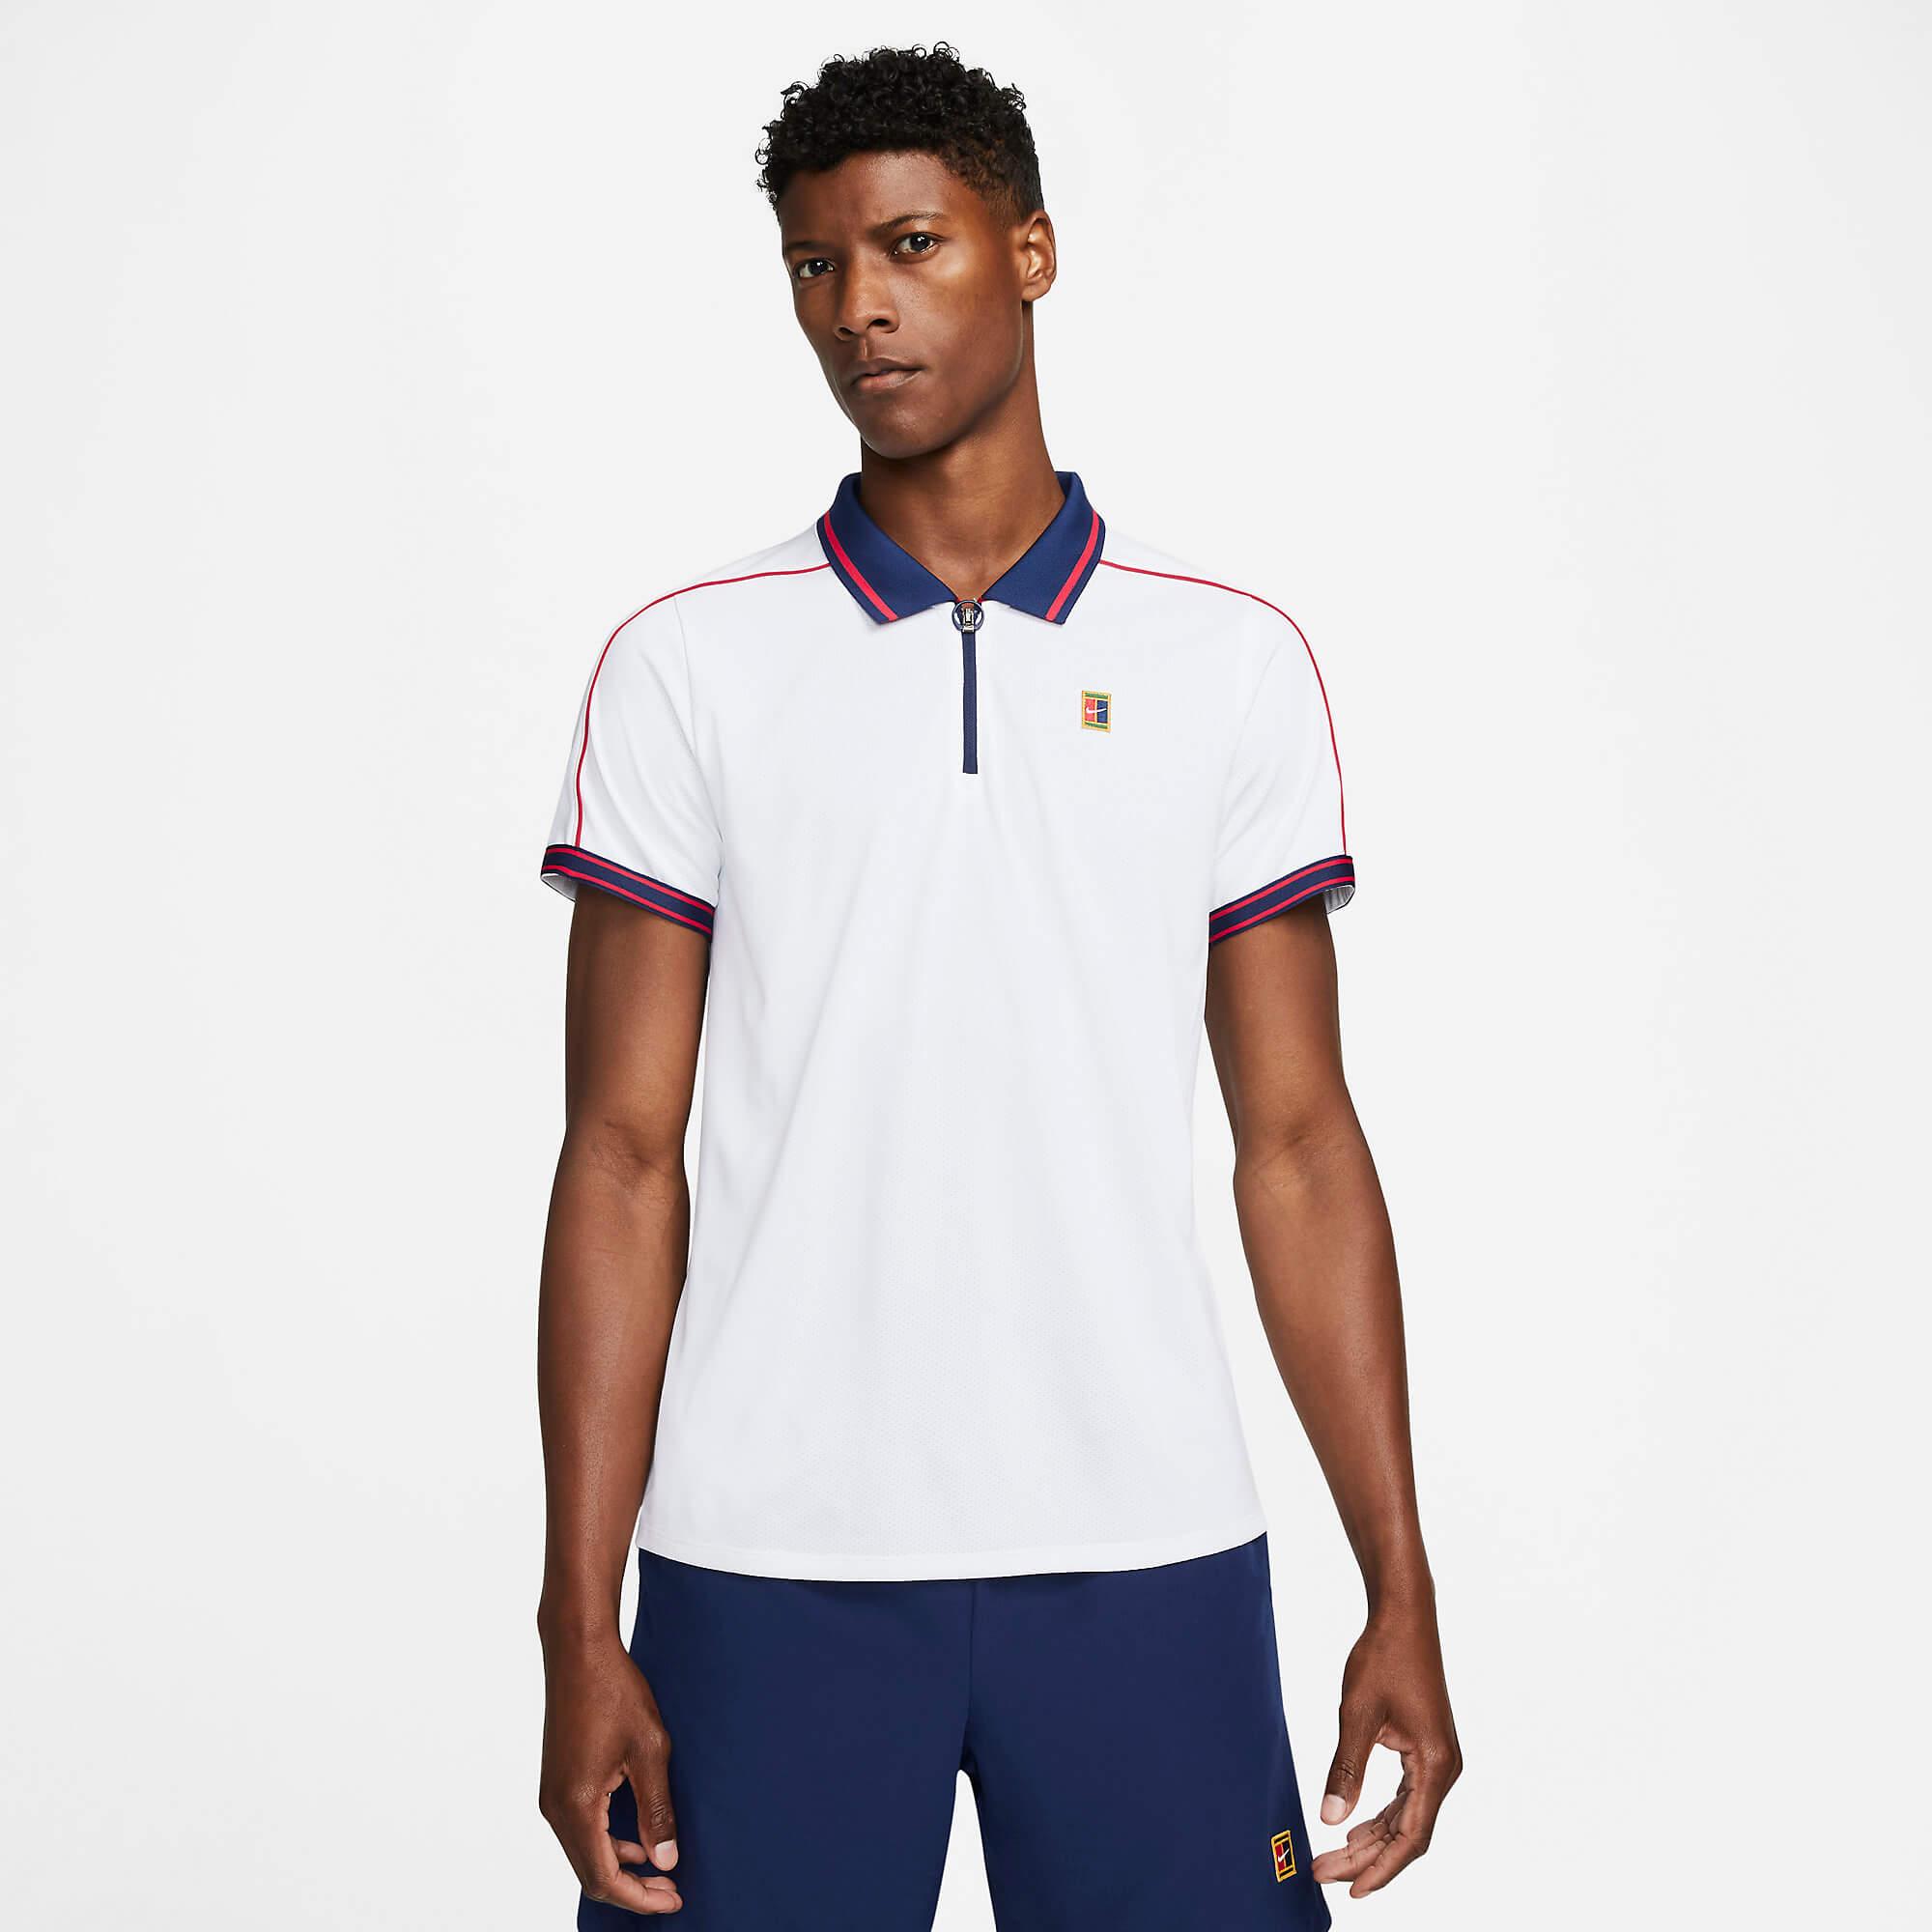 Nike Mens Dri-FIT ADV Slam Tennis Polo - White/Blue/Red - Tennisnuts.com